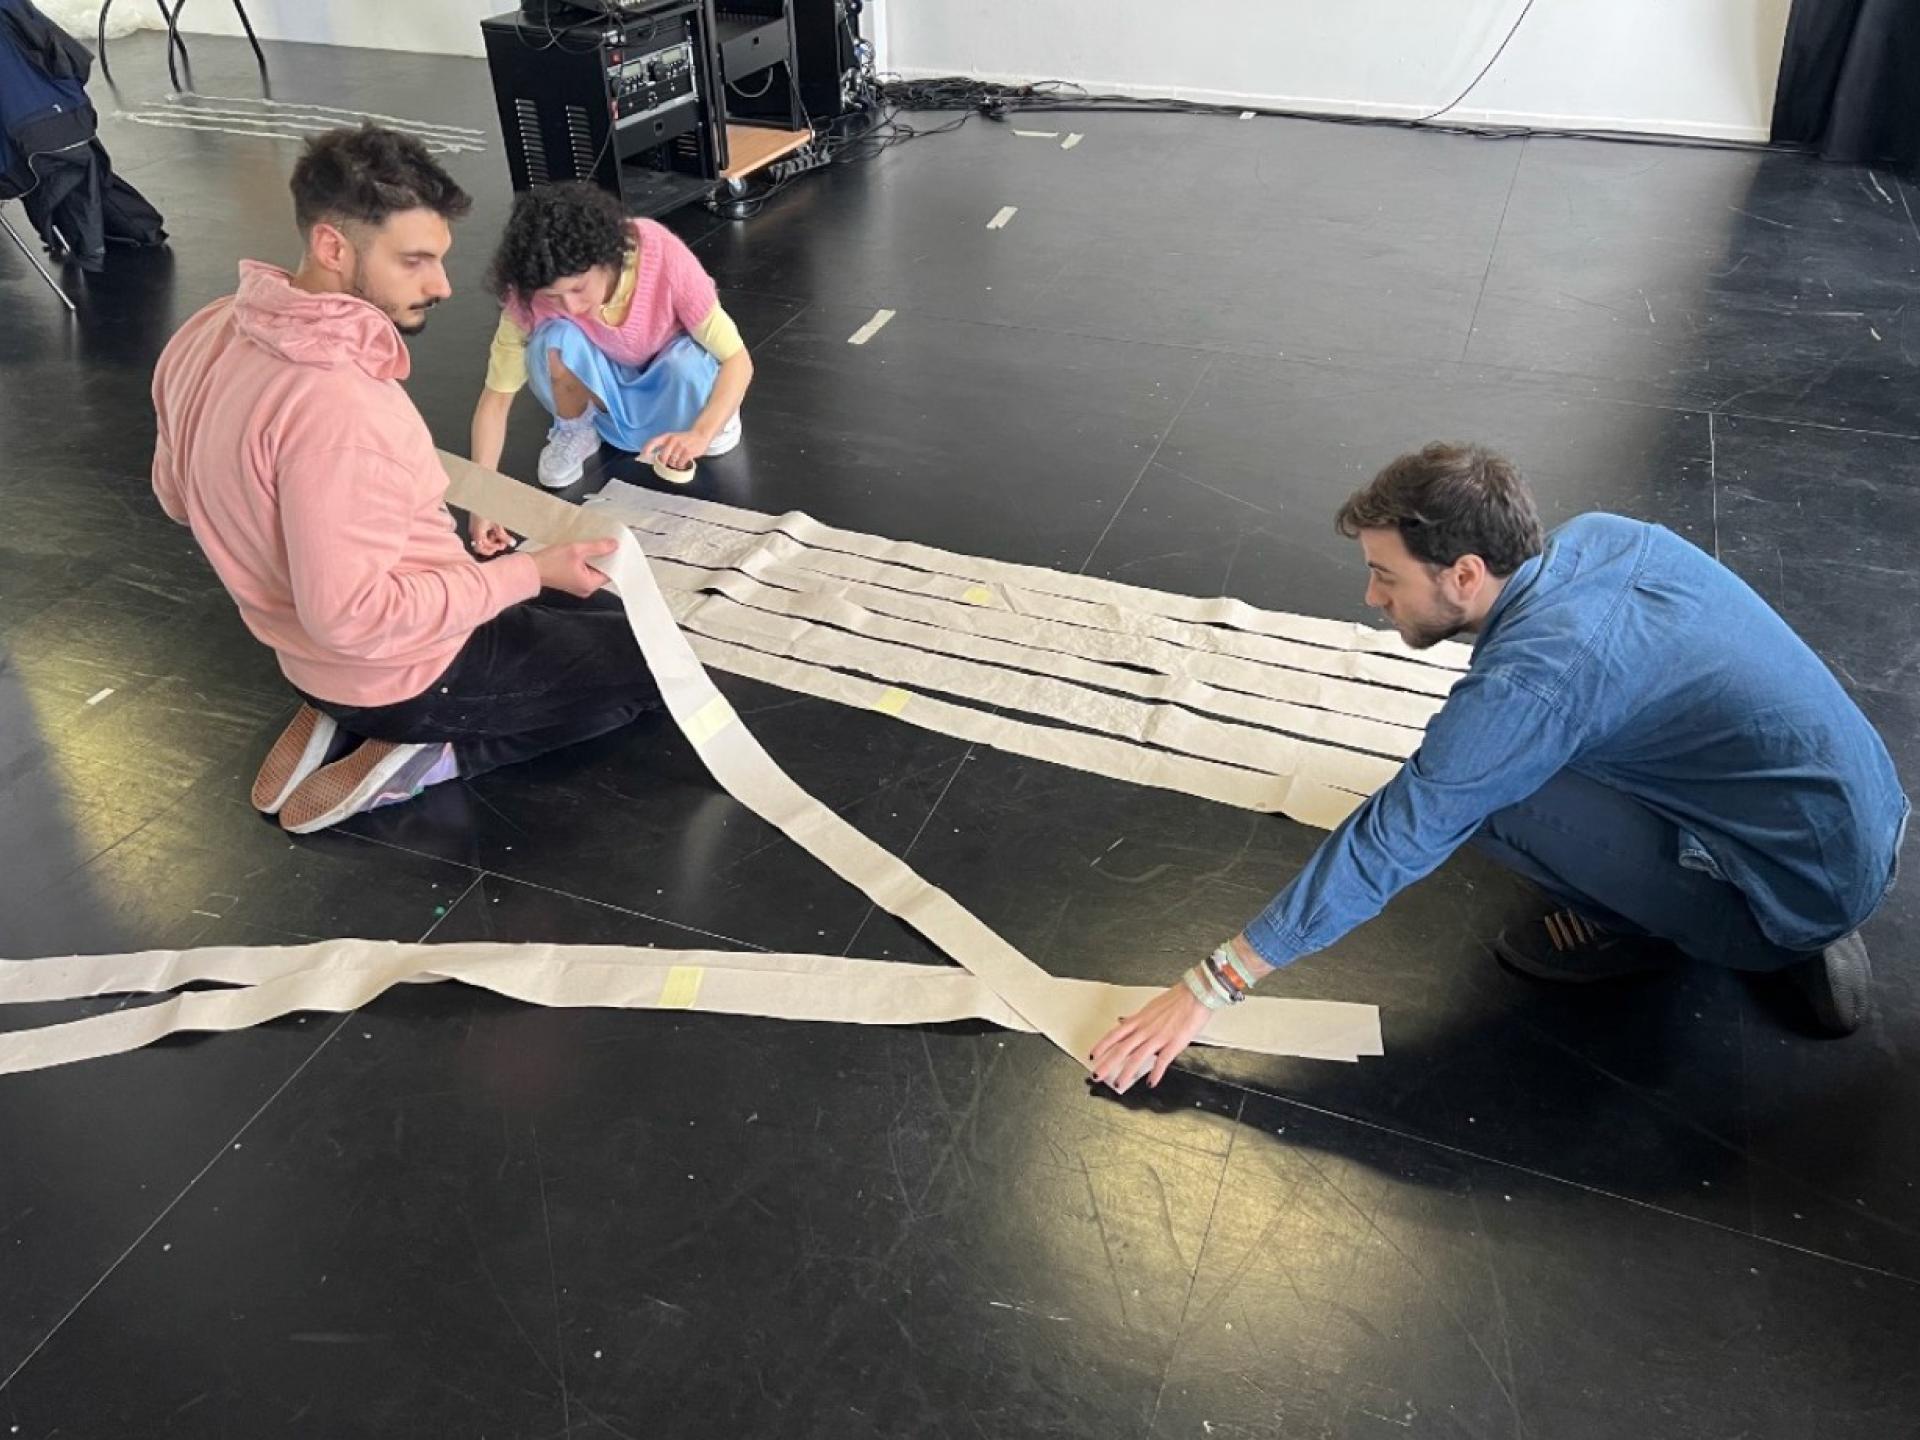 Drei Studierende, eine Frau und zwei Männer, knien am Boden und legen ca. ein Meter lange und 10 cm breite Papierstreifen nebeneinander.